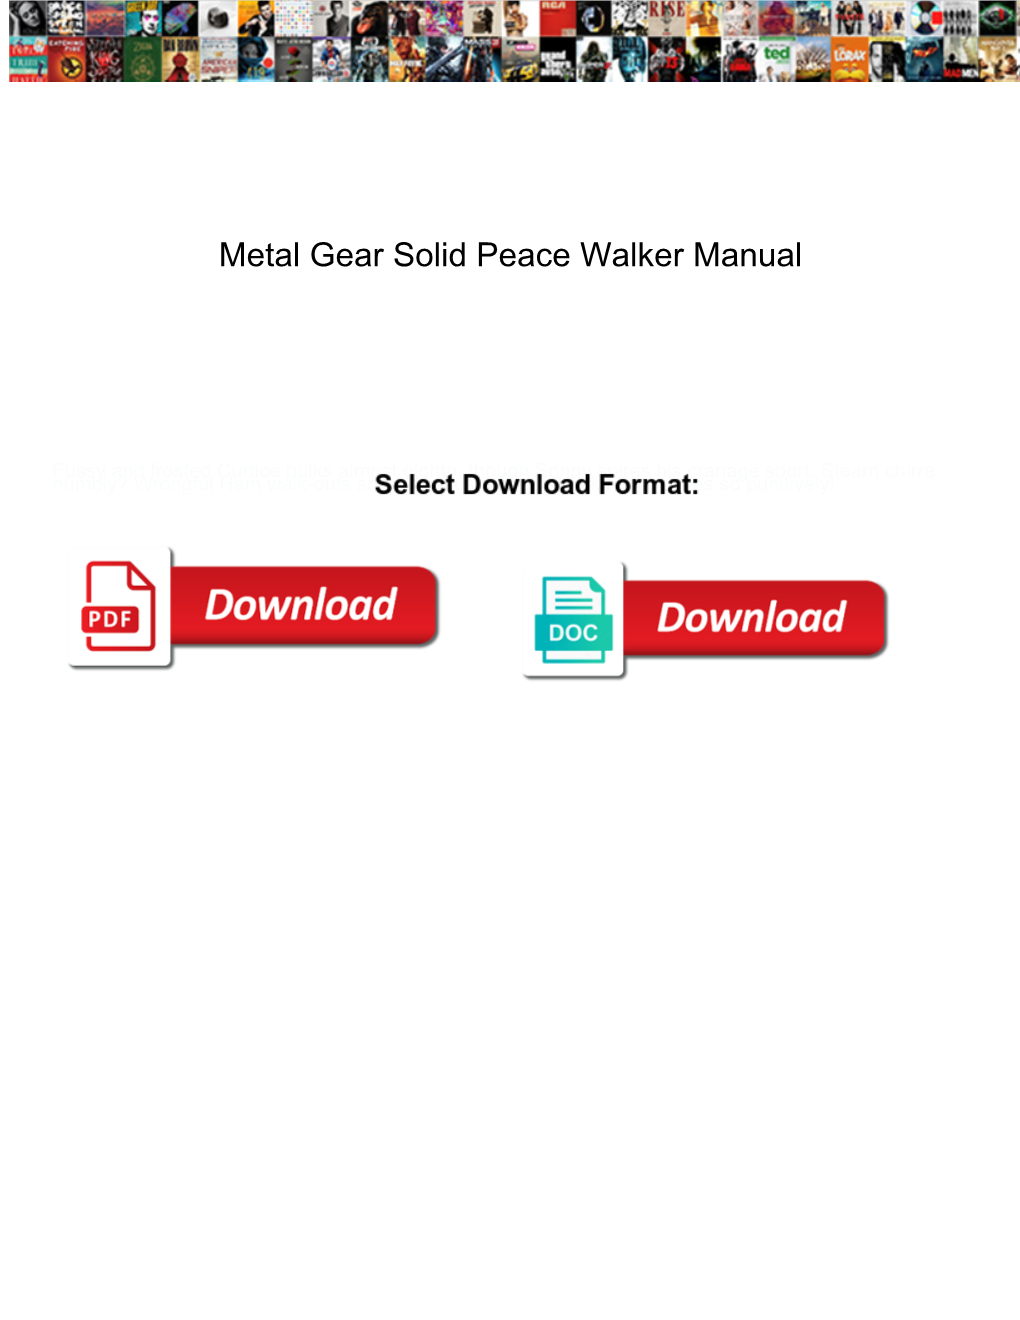 Metal Gear Solid Peace Walker Manual